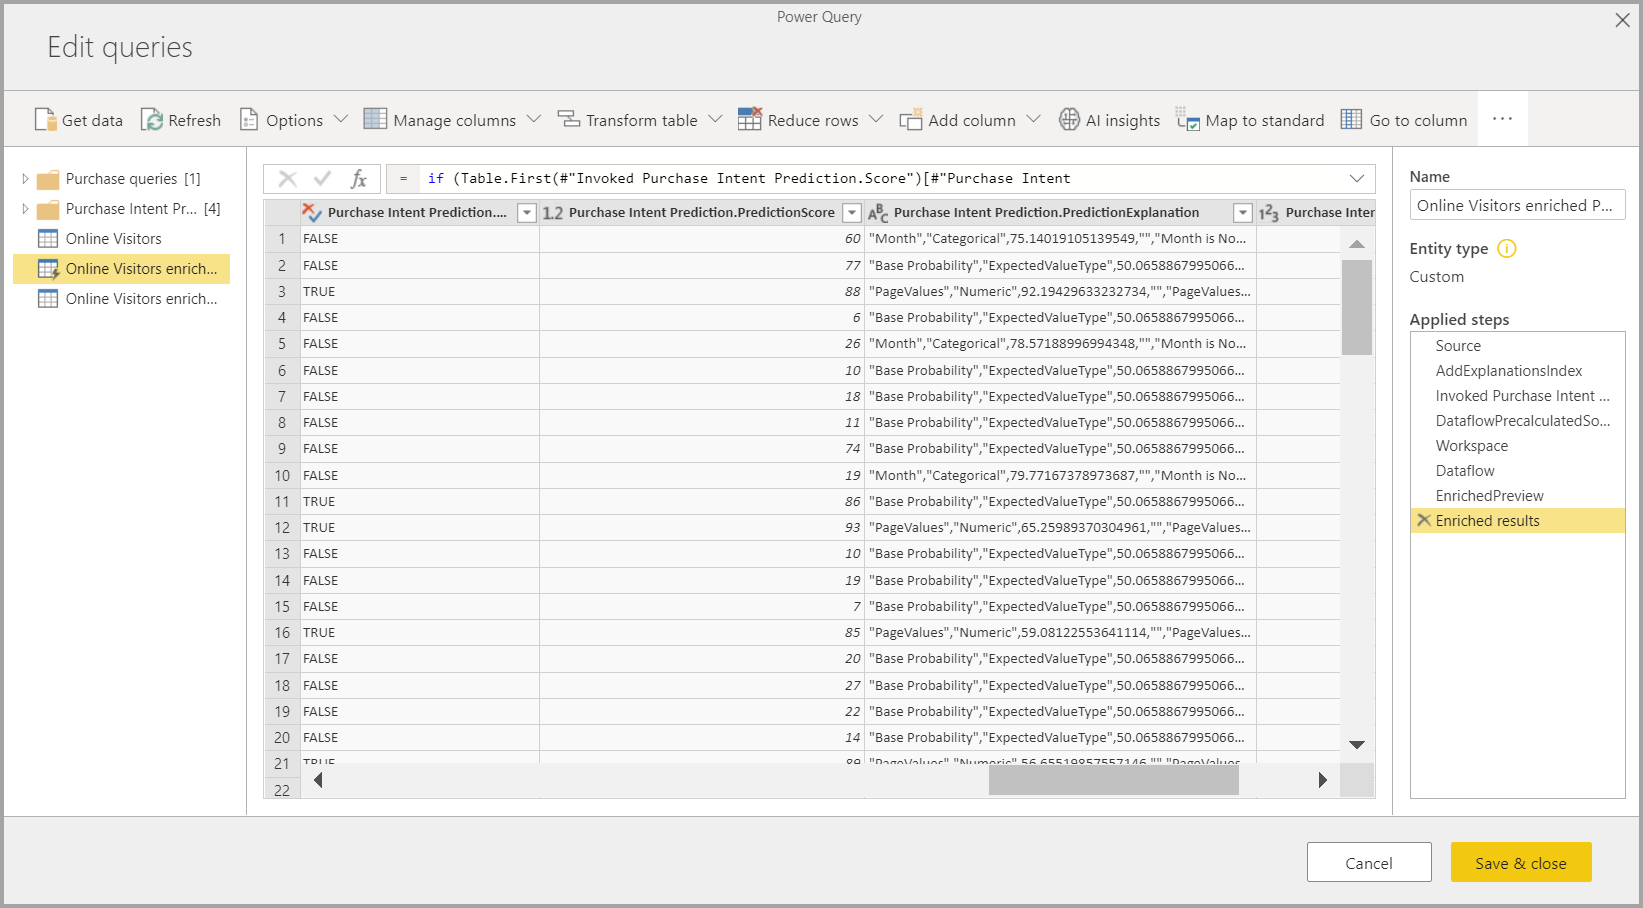 Captura de tela do Power Query mostrando os resultados do AutoML.